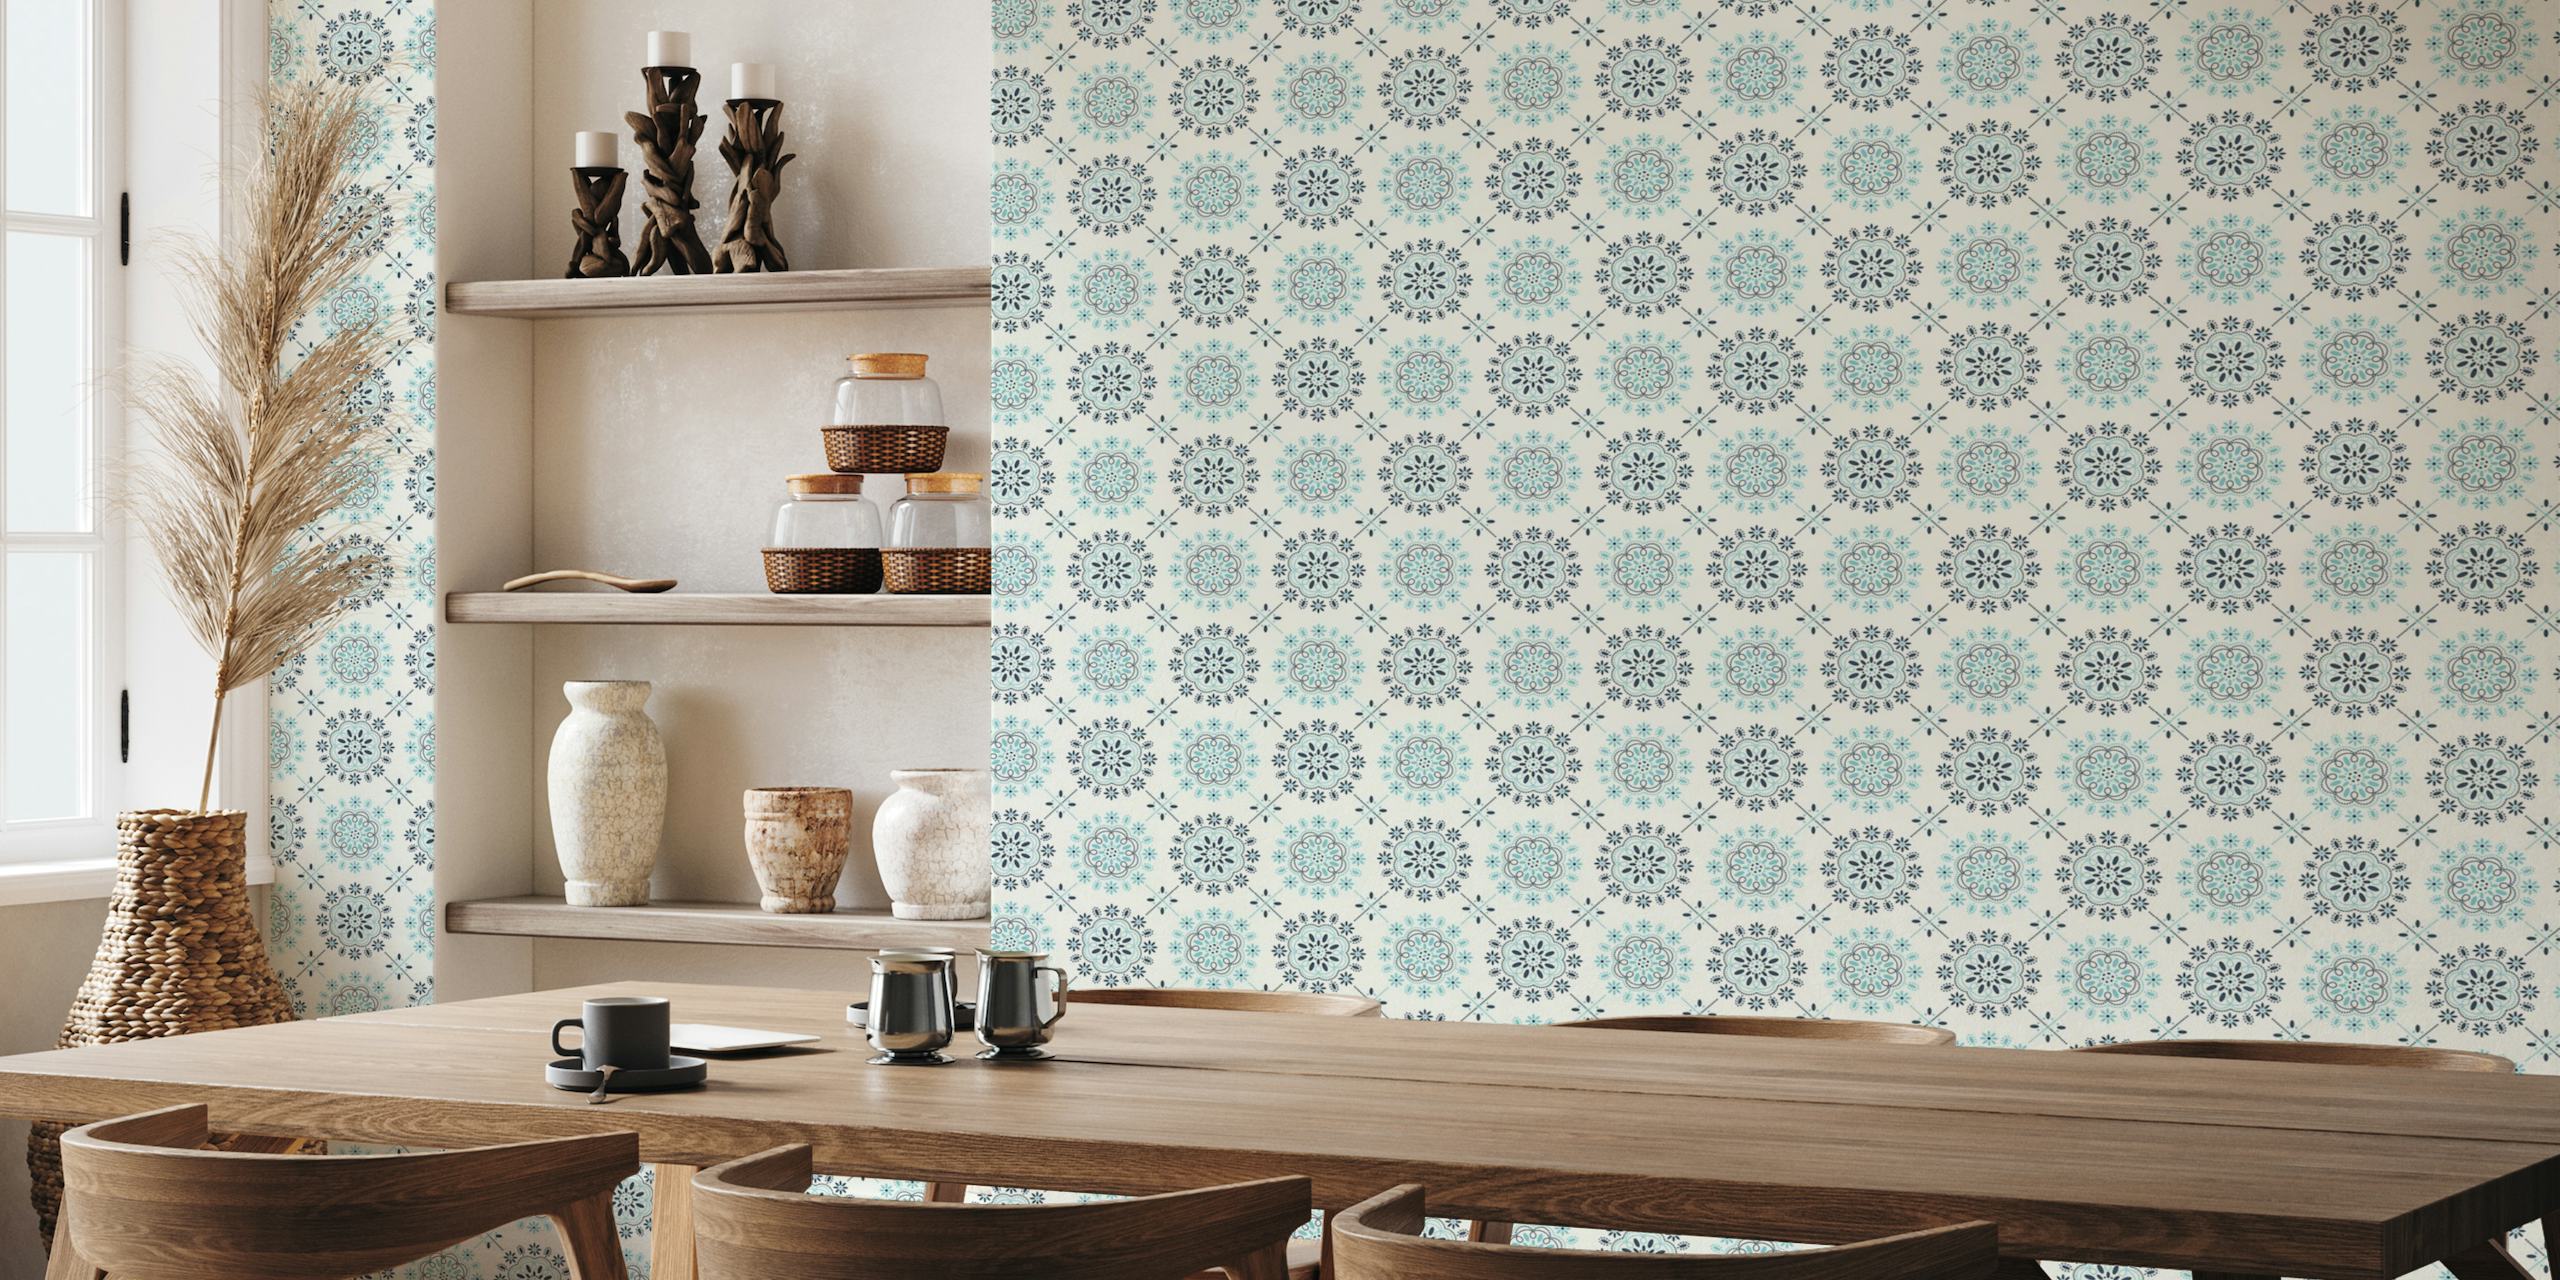 Blue and white kitchen tile papel de parede